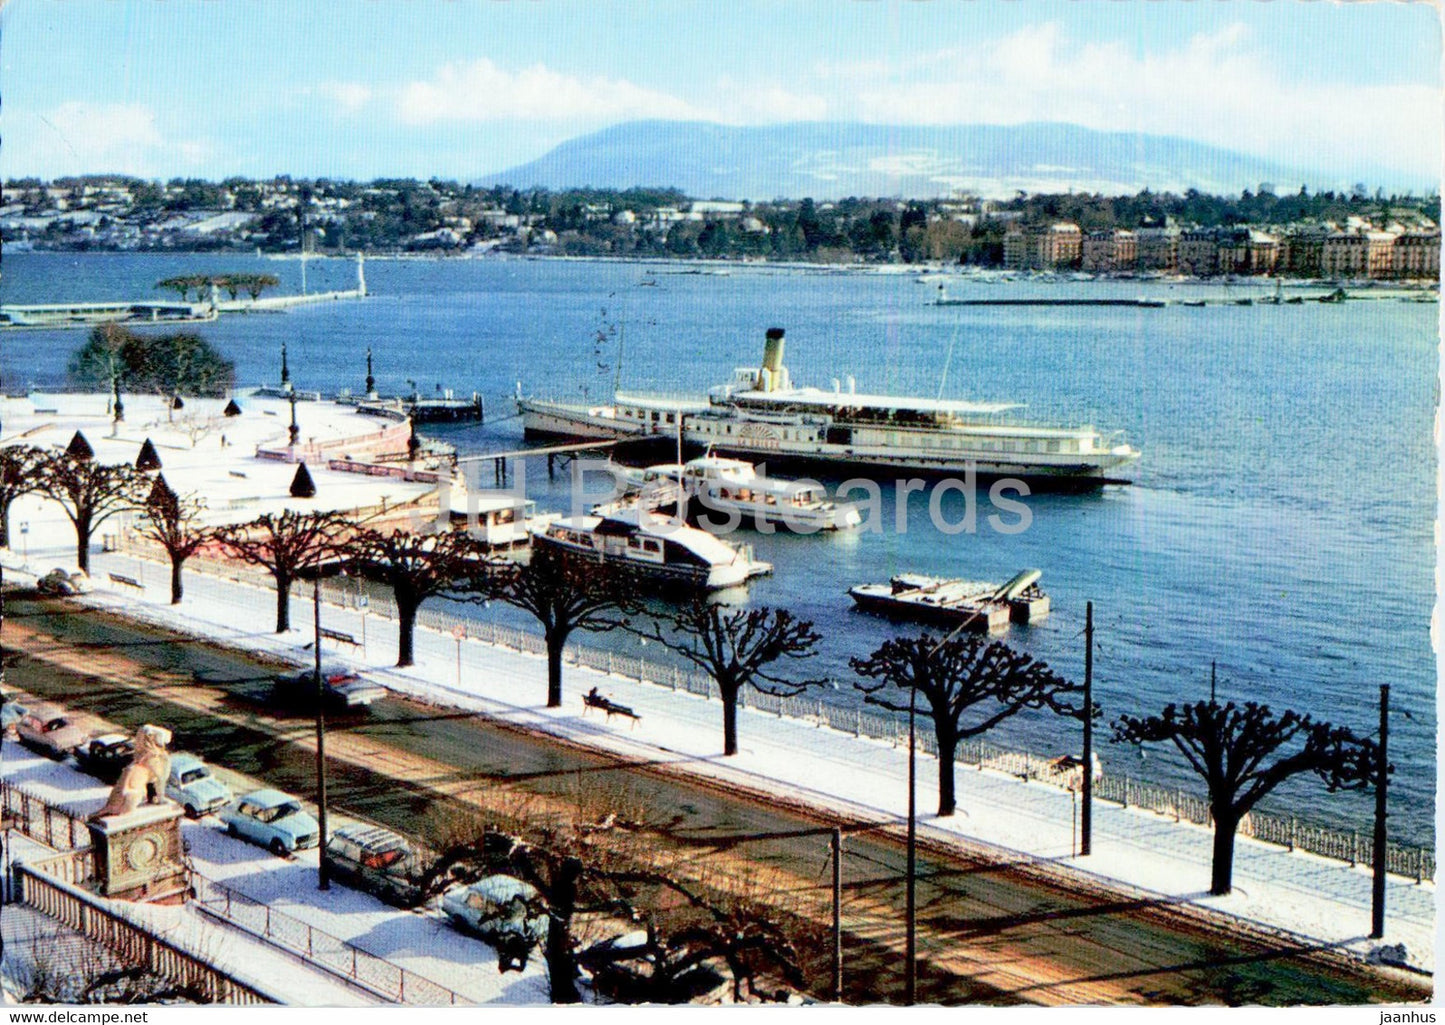 Geneve en Hiver - 1086 - Le Quai du Mt Blanc - ship - Switzerland - used - JH Postcards